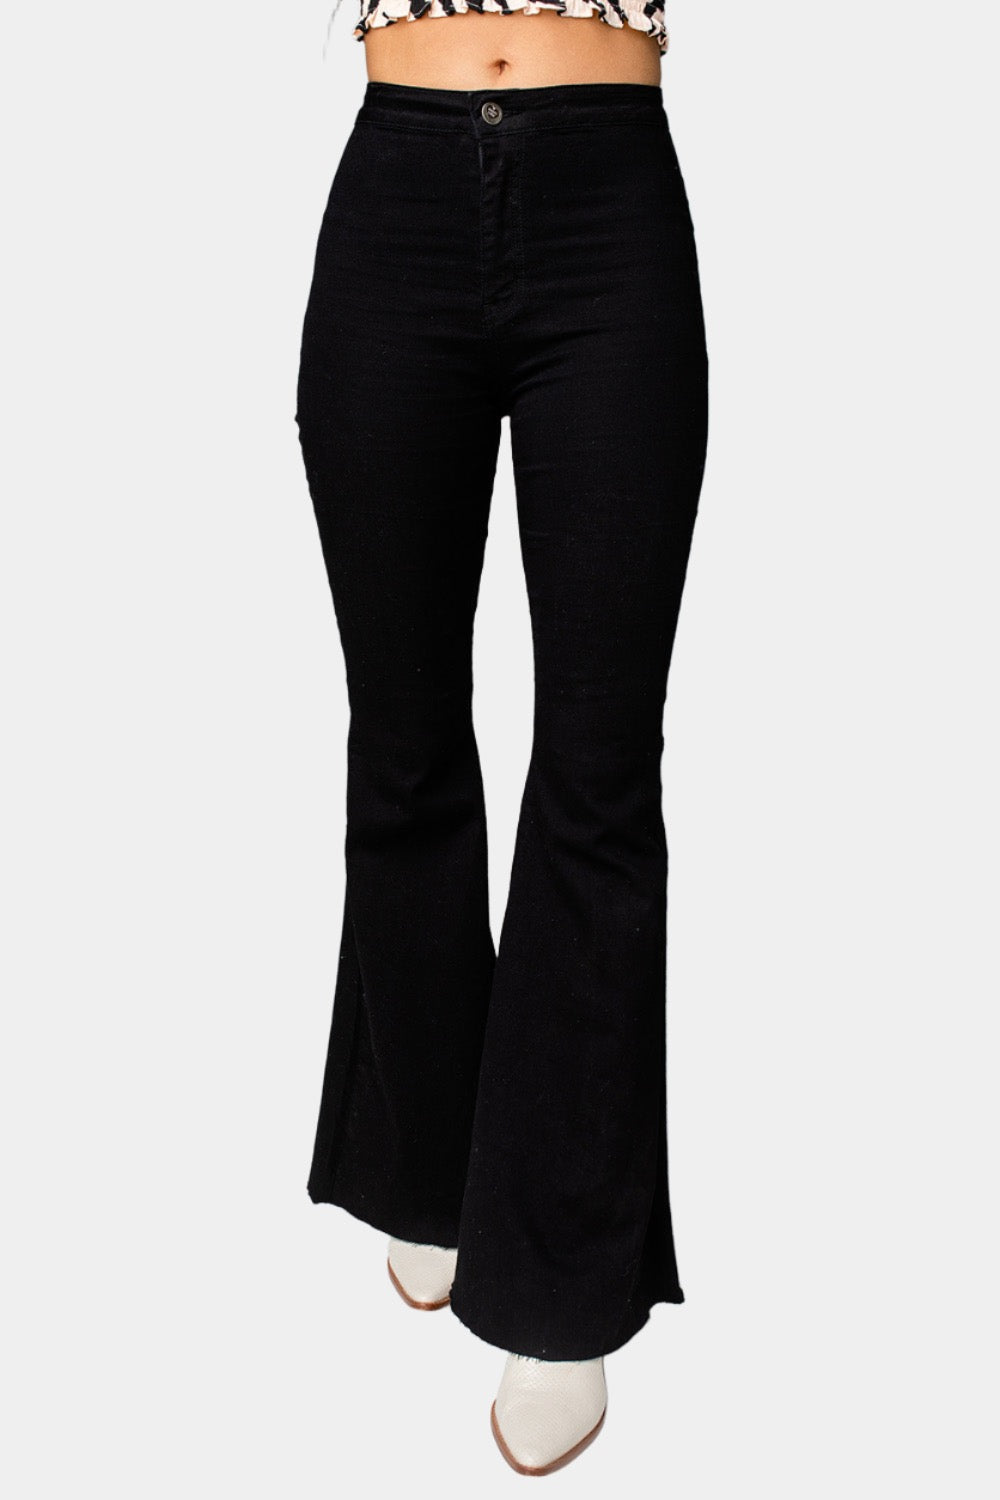 CA Stock Pants – Black | Custom Apparel Inc.